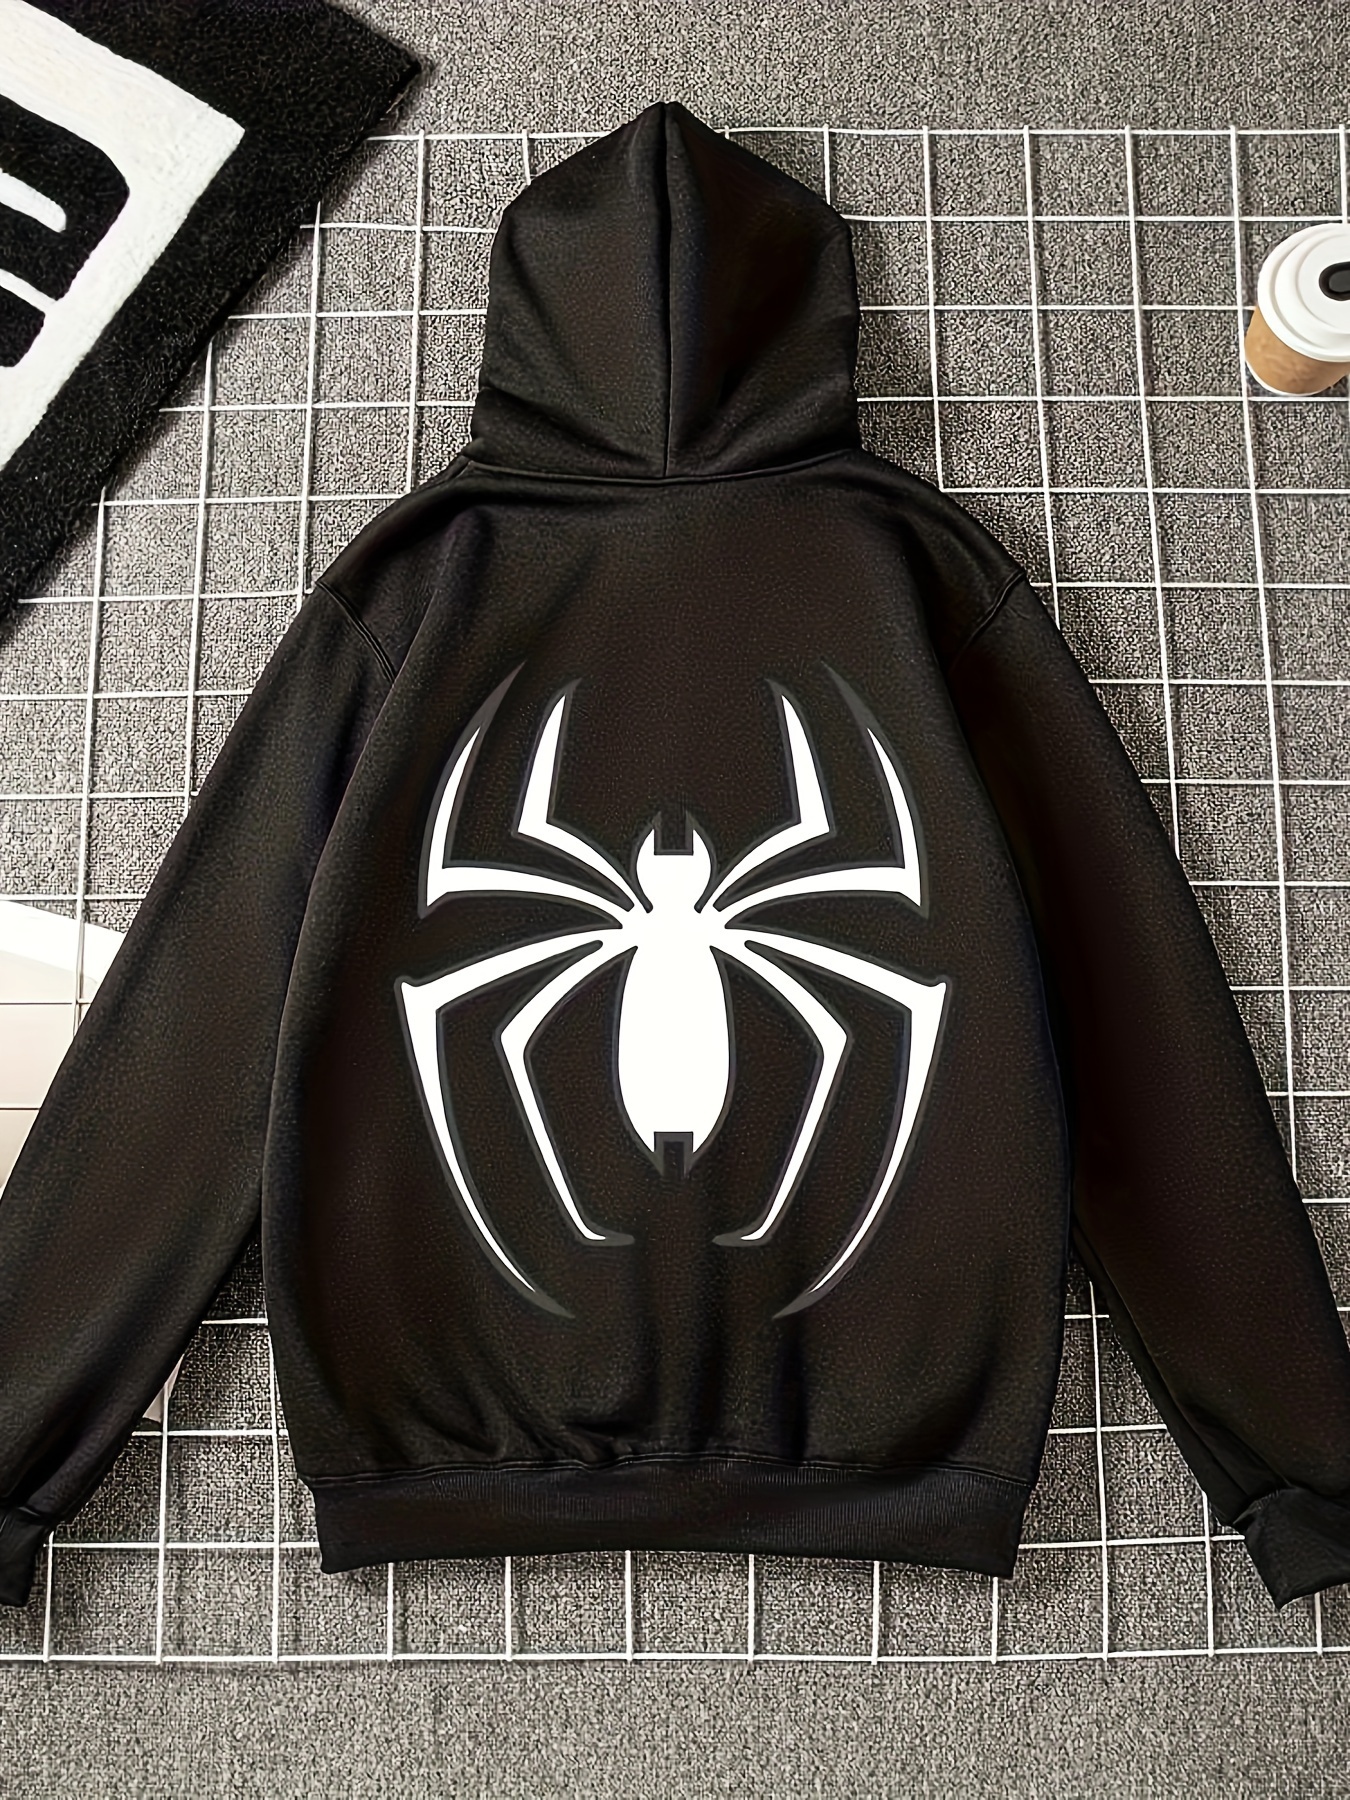 2-7 ans Enfants Super-héros Spider-man Zip Veste à capuche Manteau Manches  longues Sports décontractés Tops Cadeaux